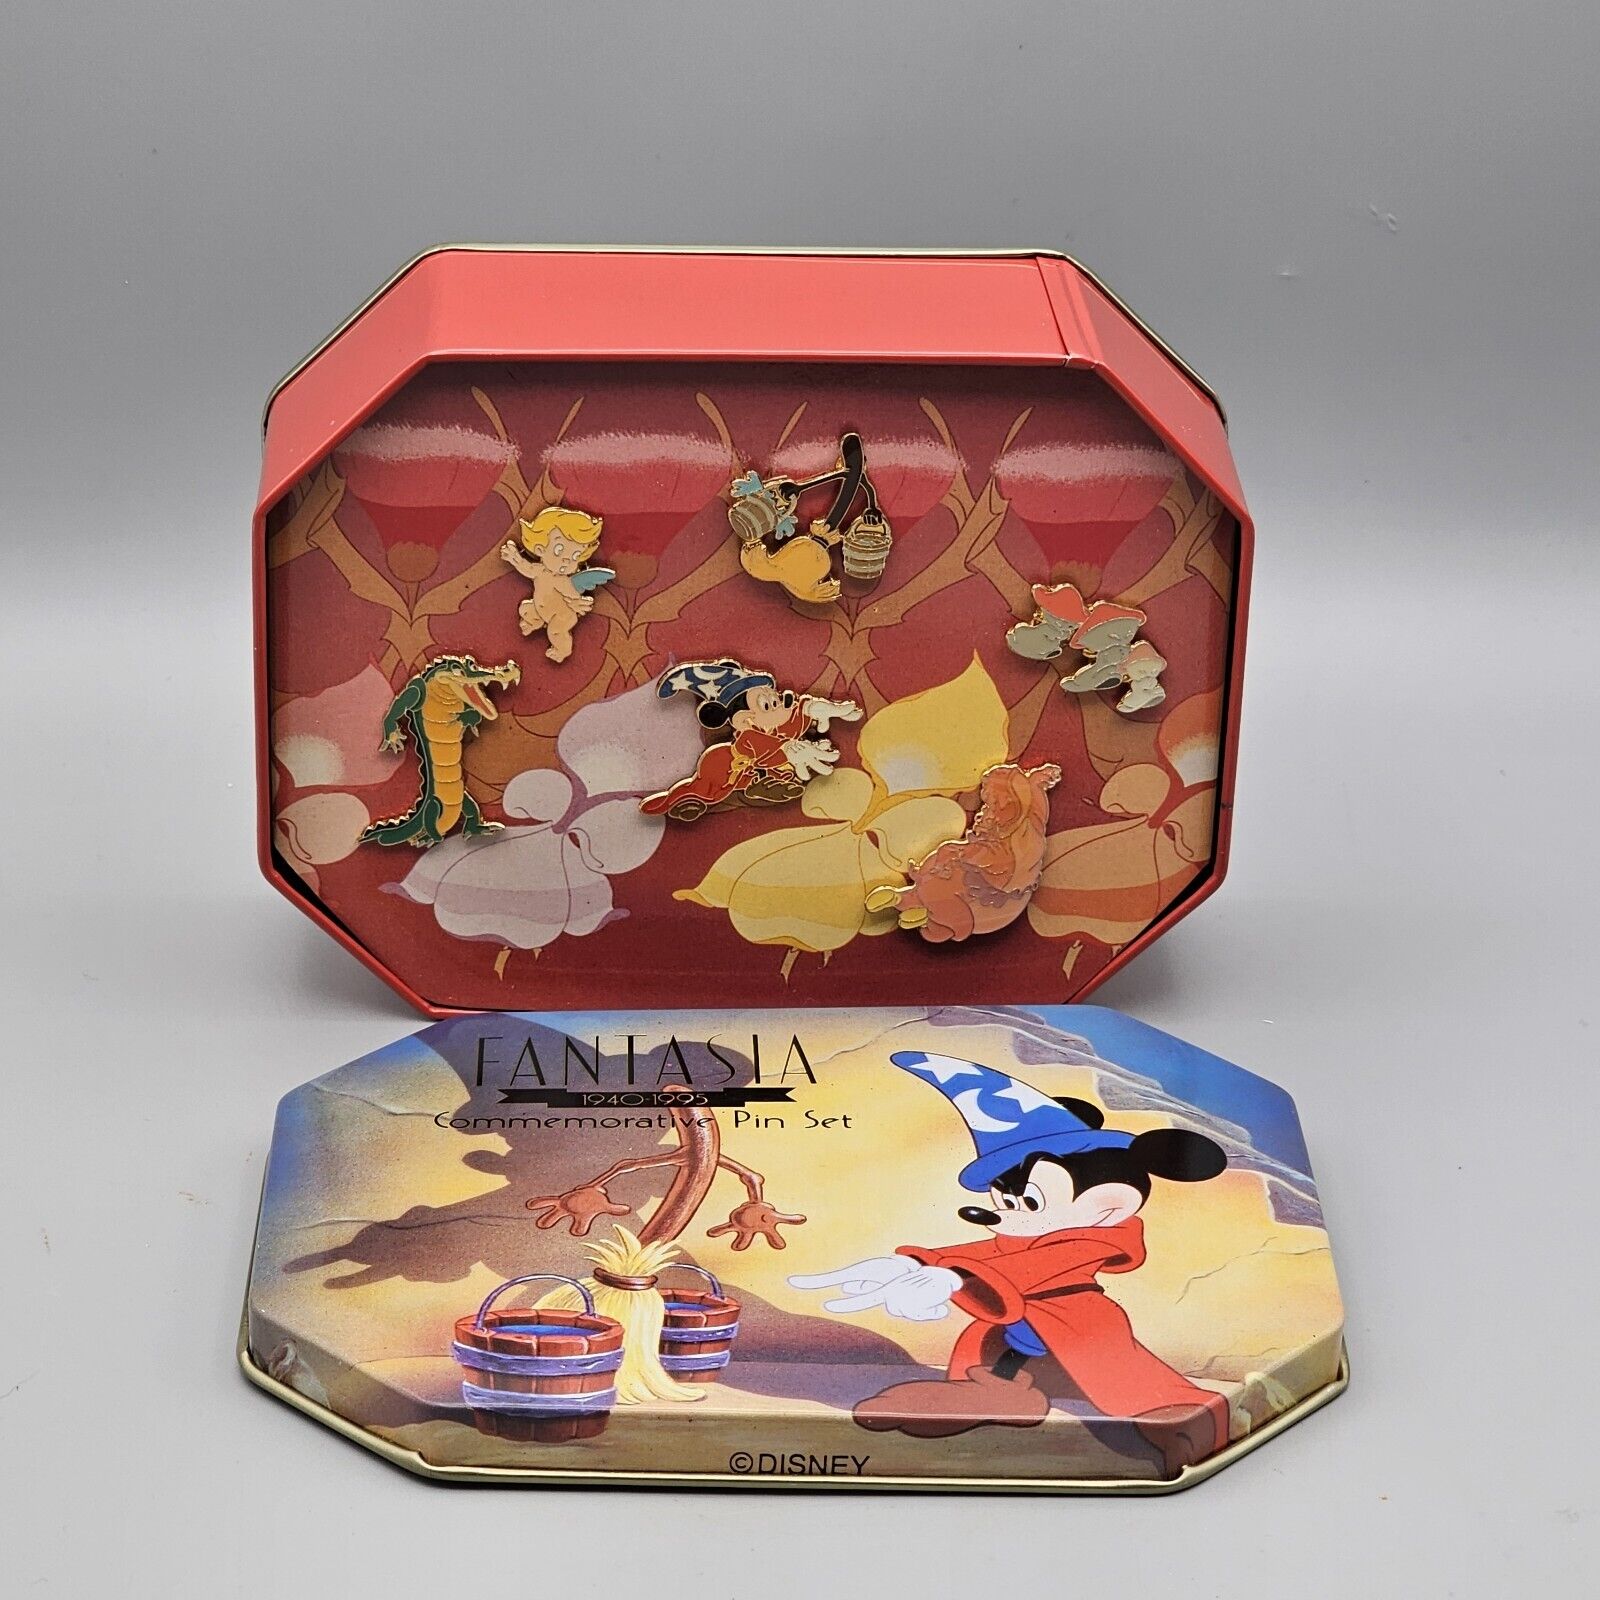 Disney Fantasia Commemorative Tin Six Piece Pin Set